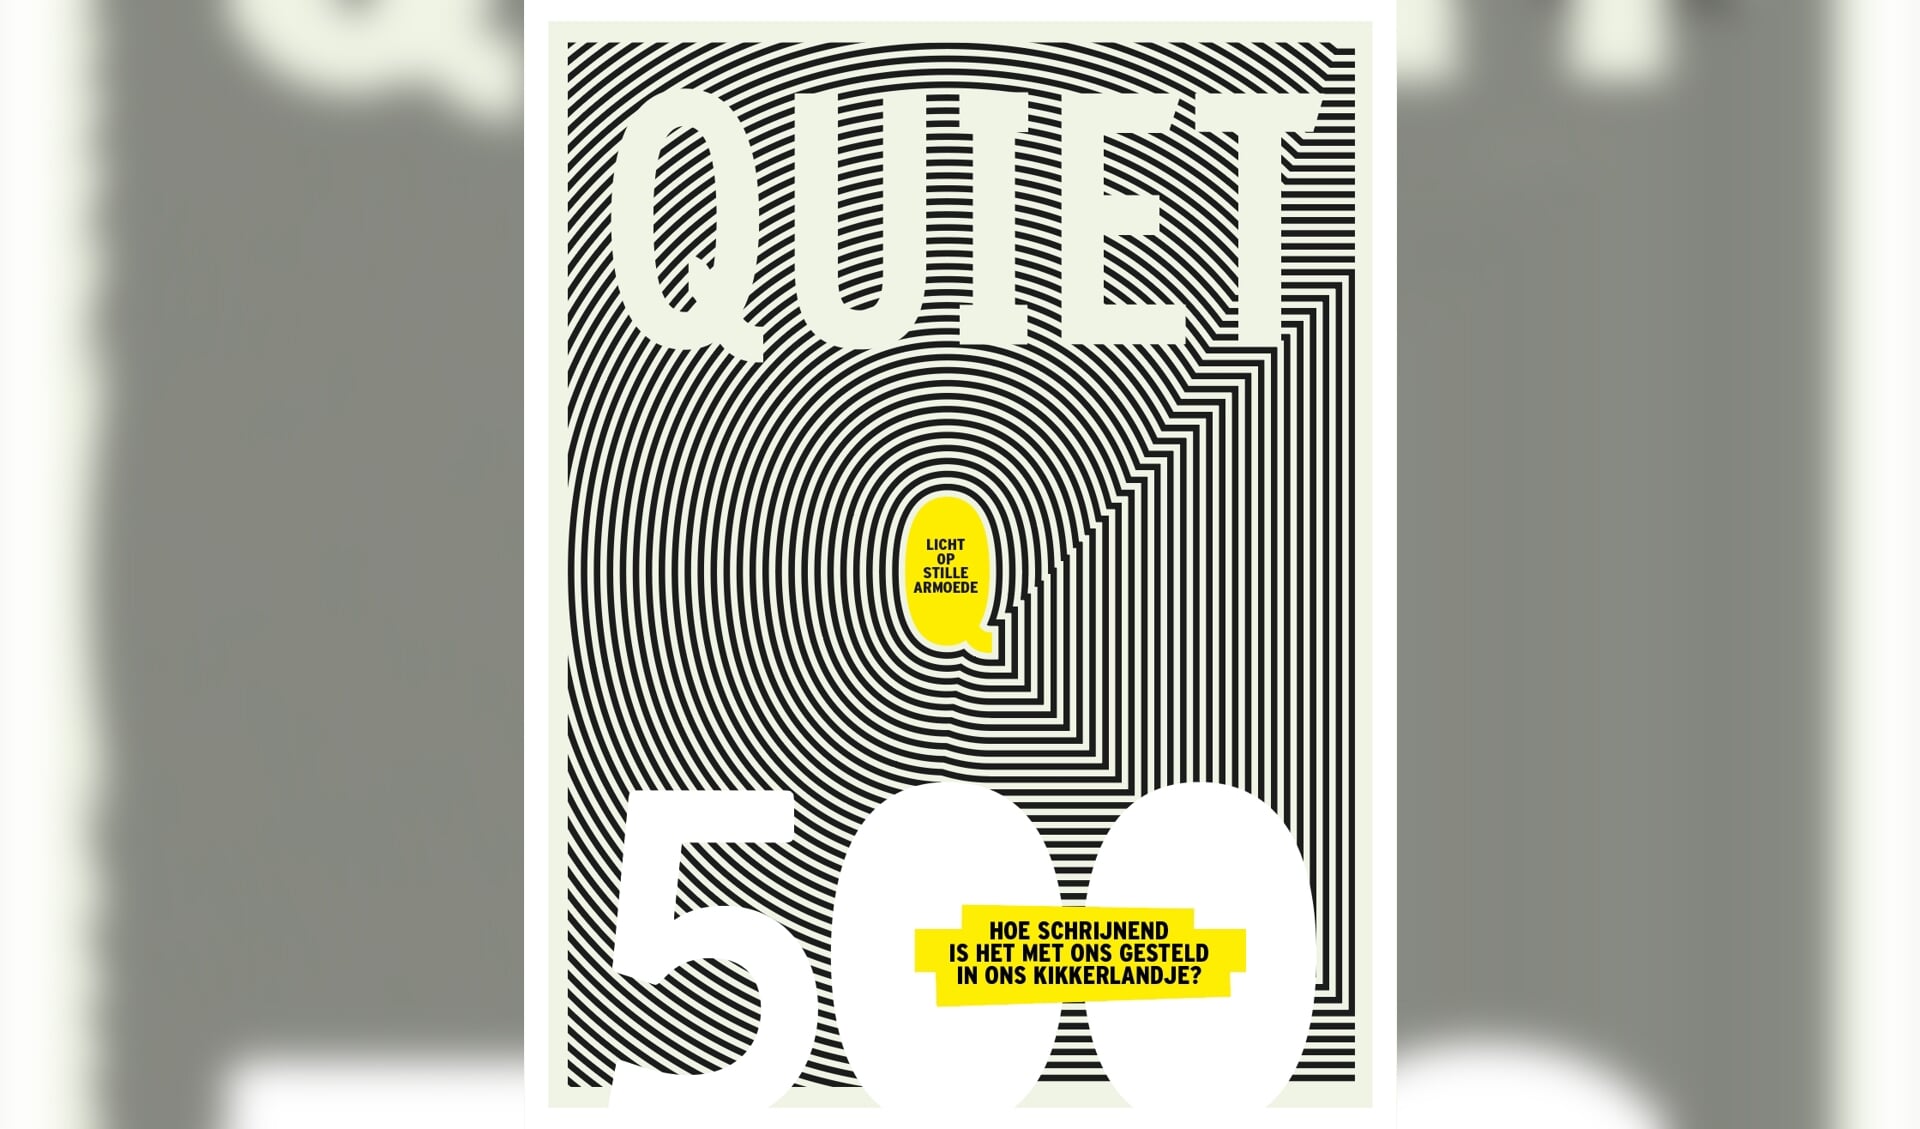 De cover van Quiet 500 schijnt letterlijk licht op armoede door het lichtgevende ontwerp van vormgever Rogier Eekelaar. 